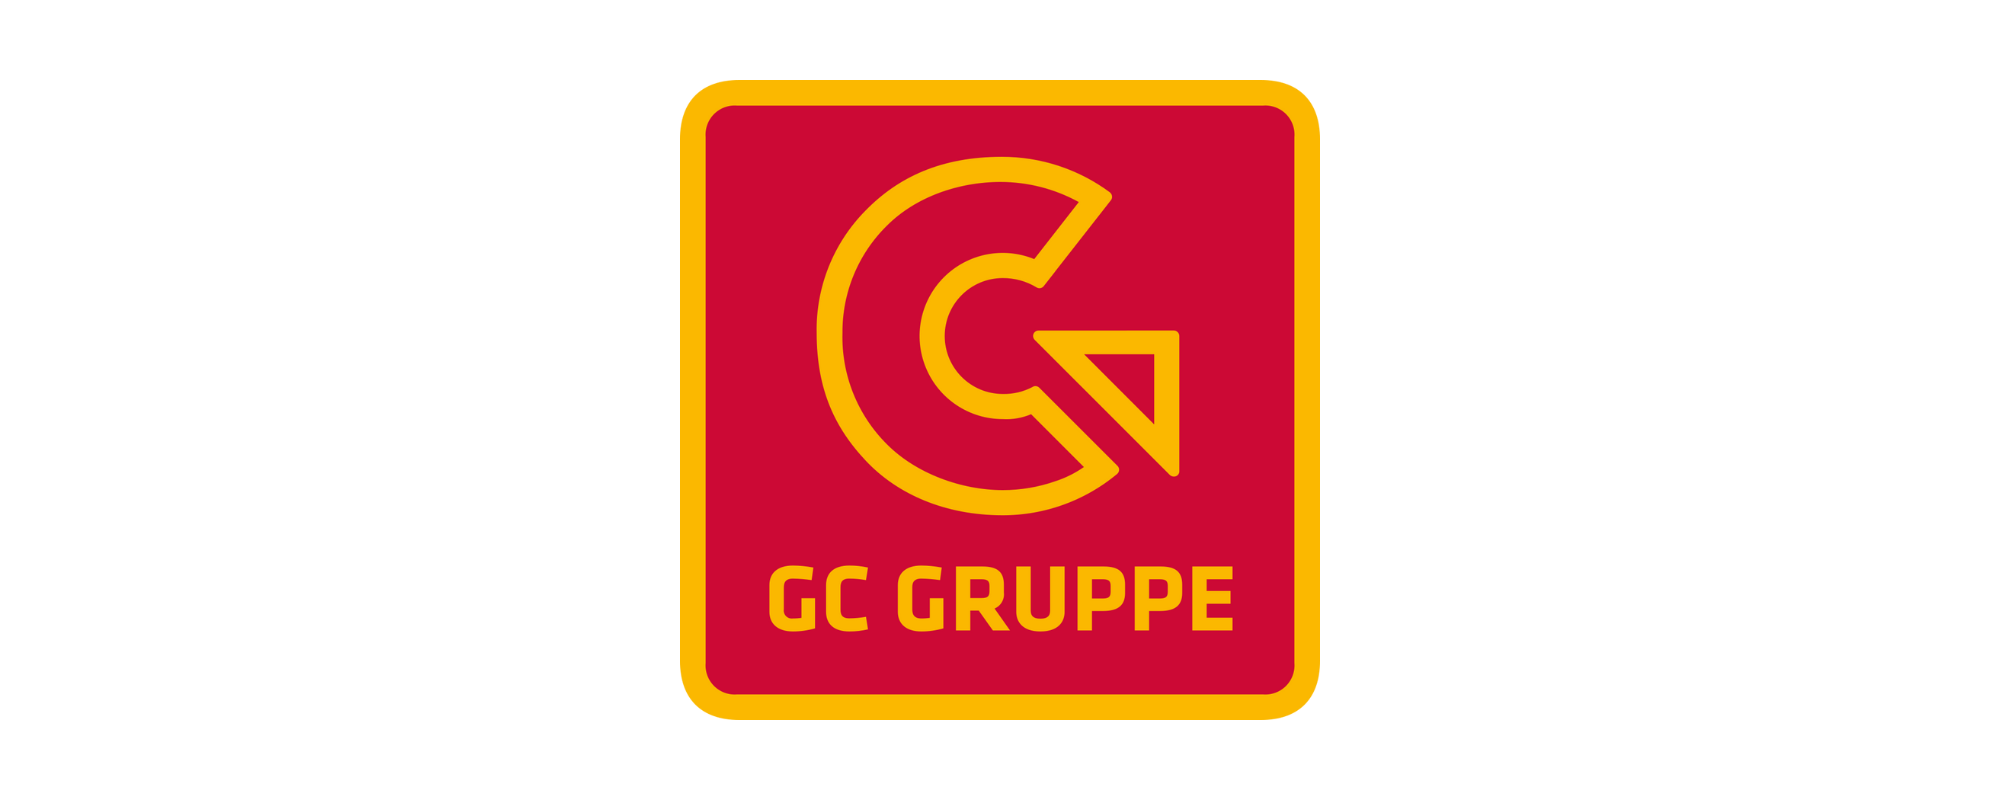 gc-gruppe-logo